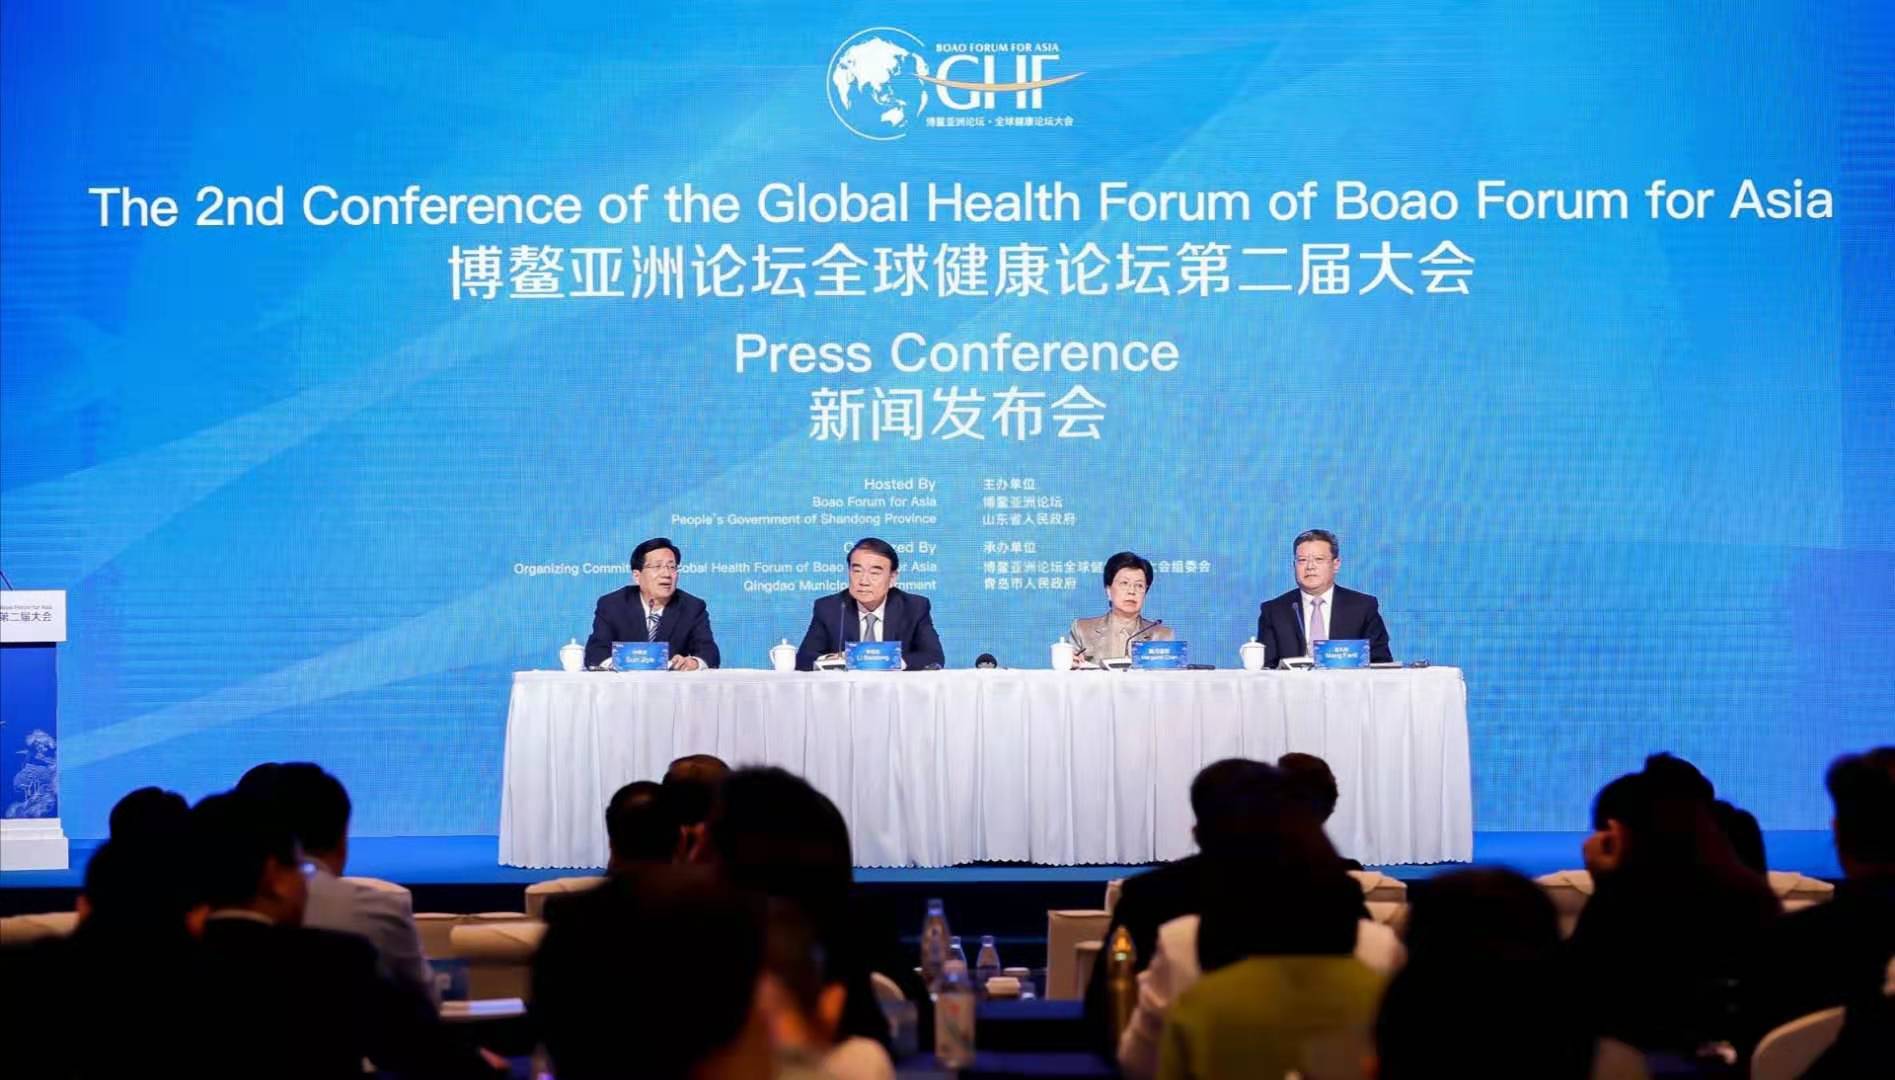 10月22日上午A博鰲亞洲論壇全球健康論壇第二屆大會在北京召開新聞發佈會C